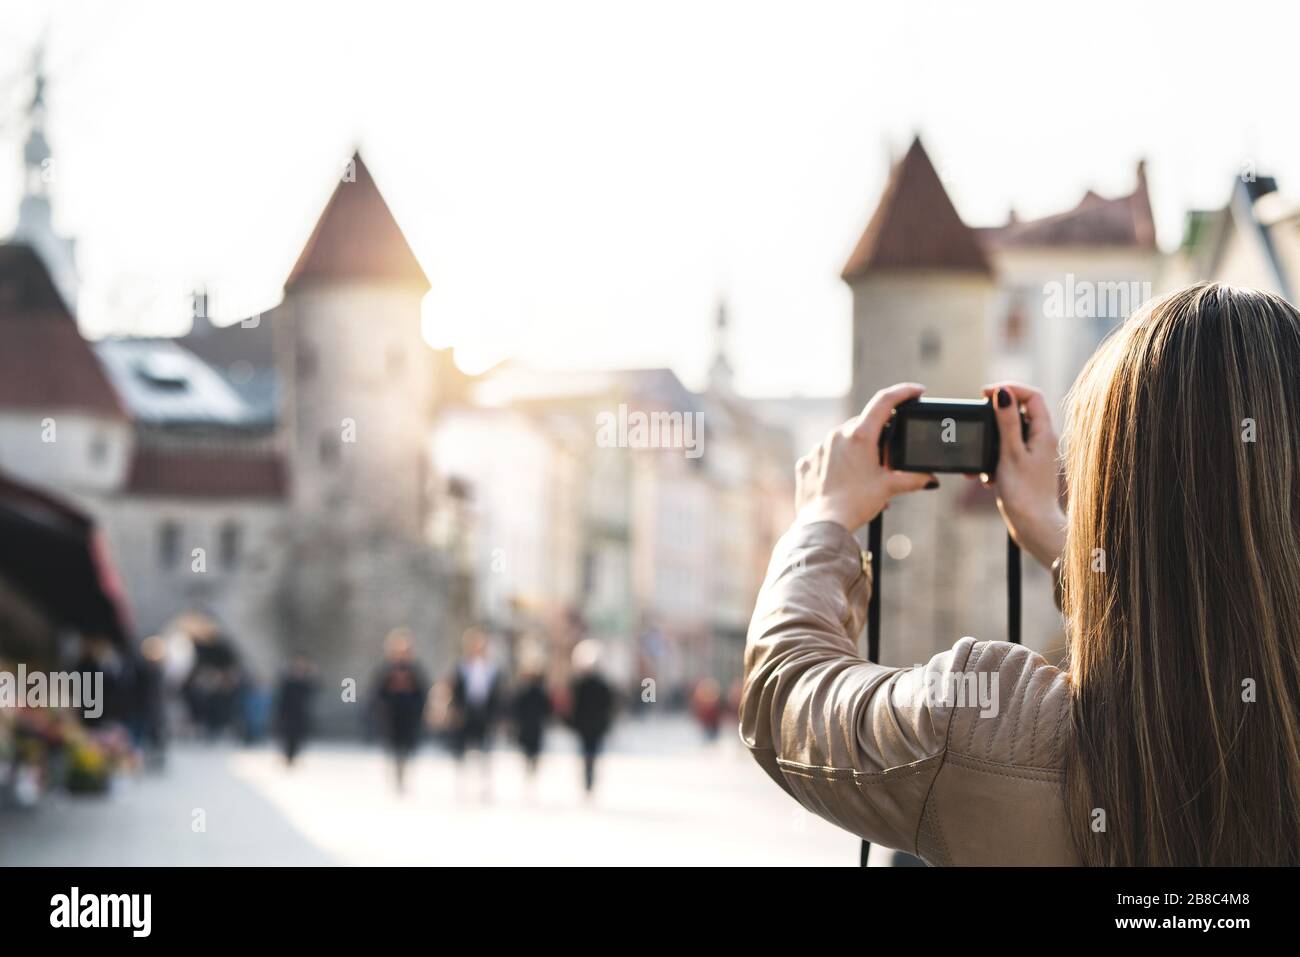 Frau in Tallinn fotografieren Viru-Tor. Touristen im Urlaub, die ein Bild vom Wahrzeichen Estlands machen. Menschen, die in einer beliebten Straße spazieren gehen. Stockfoto